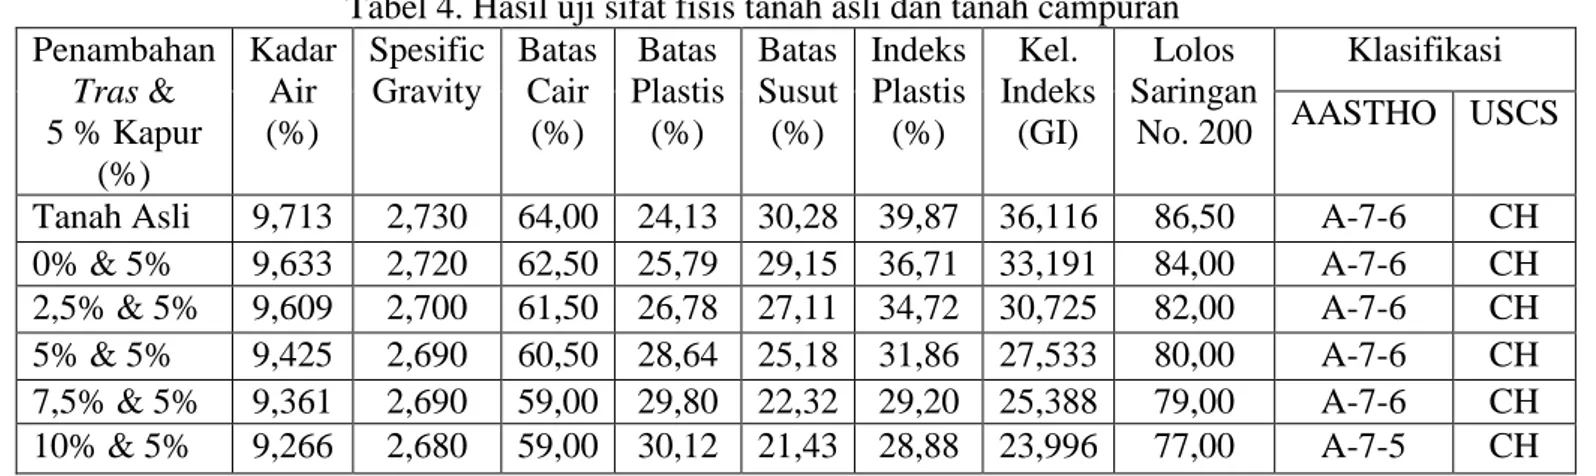 Tabel 4. Hasil uji sifat fisis tanah asli dan tanah campuran  Penambahan  Tras &amp;   5 % Kapur  (%)  Kadar Air (%)  Spesific Gravity  Batas Cair (%)  Batas  Plastis (%)  Batas Susut (%)  Indeks Plastis (%)  Kel